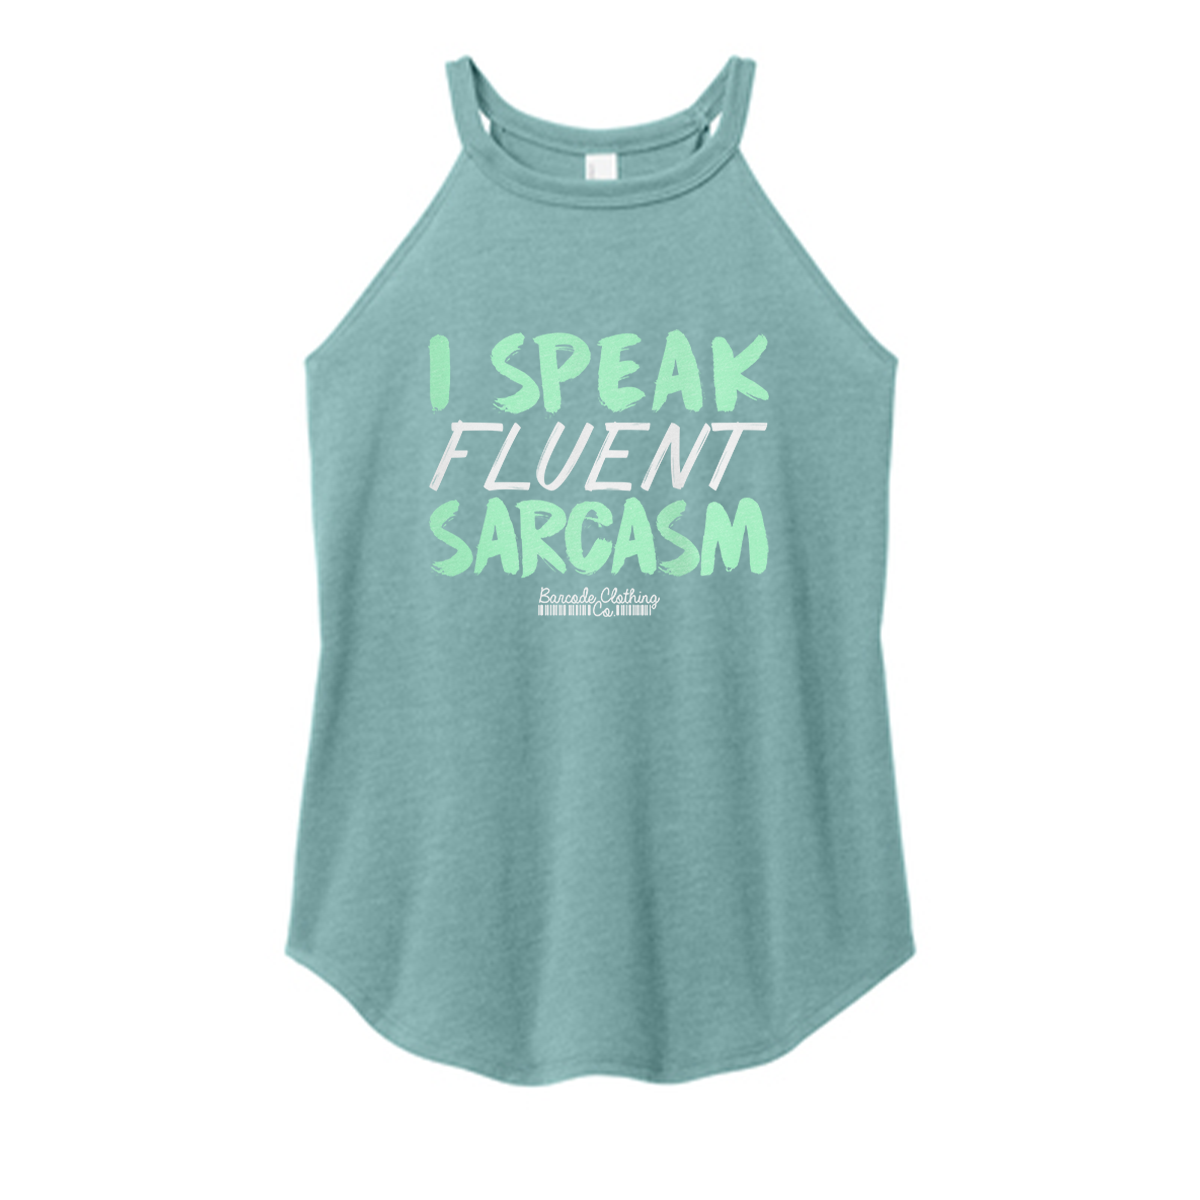 I Speak Fluent Sarcasm Color Rocker Tank